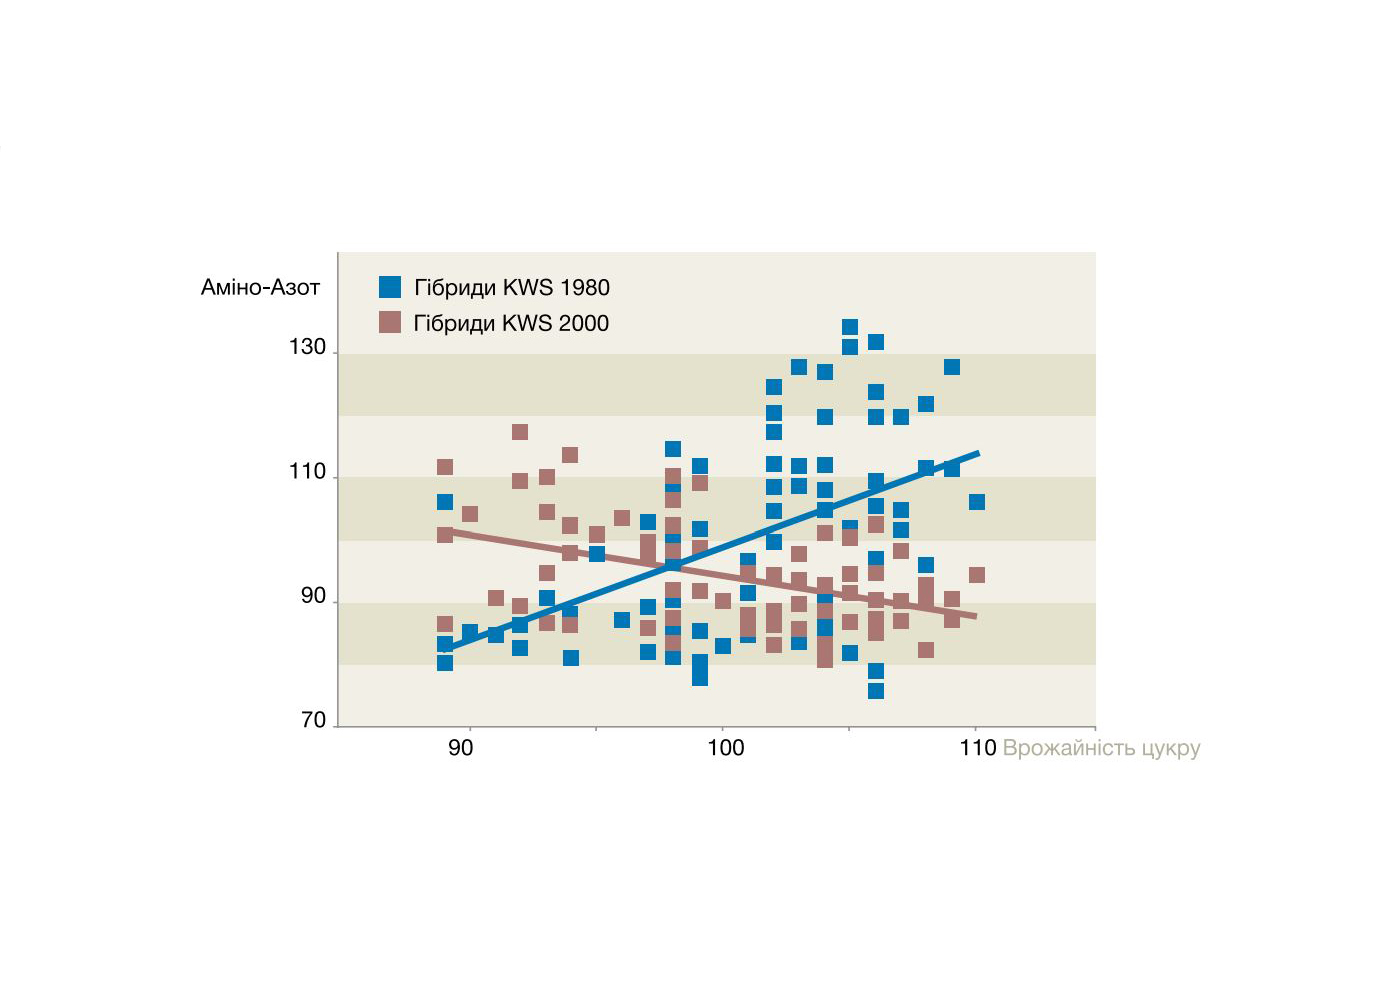 Графік 5. Прогрес селекційної програми KWS у підвищенні врожайності цукру і зниження вмісту аміно-азоту